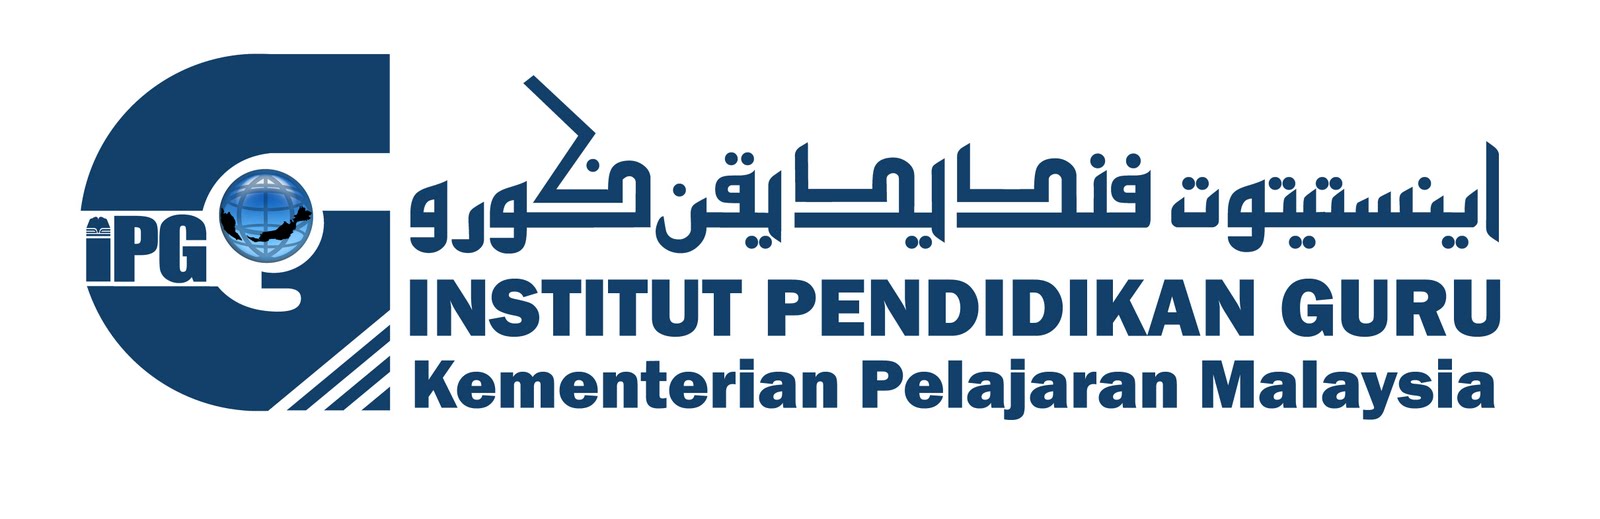 Logo Institut Pendidikan Guru